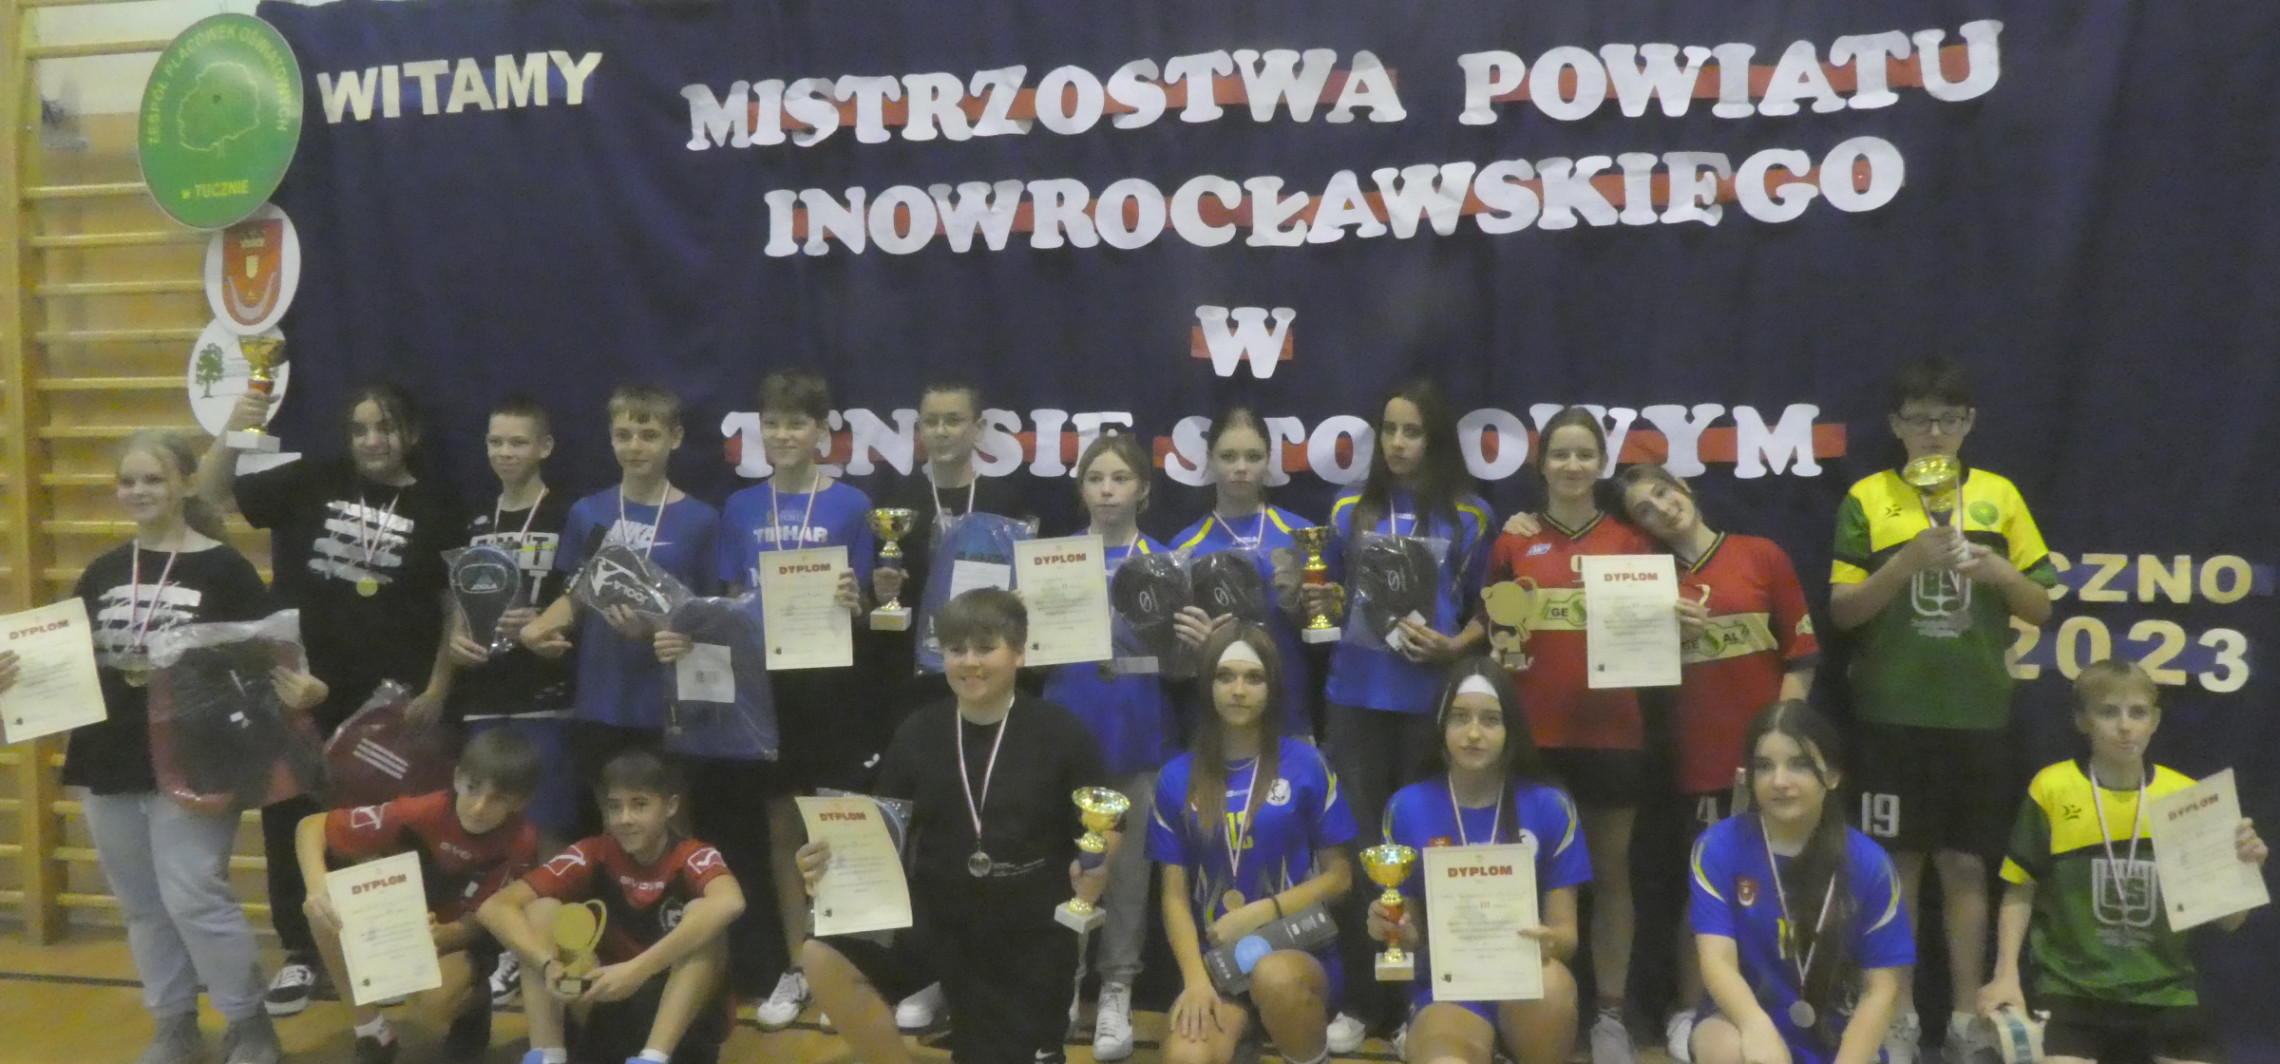 Inowrocław - Poznaliśmy najlepszych szkolnych pingpongistów